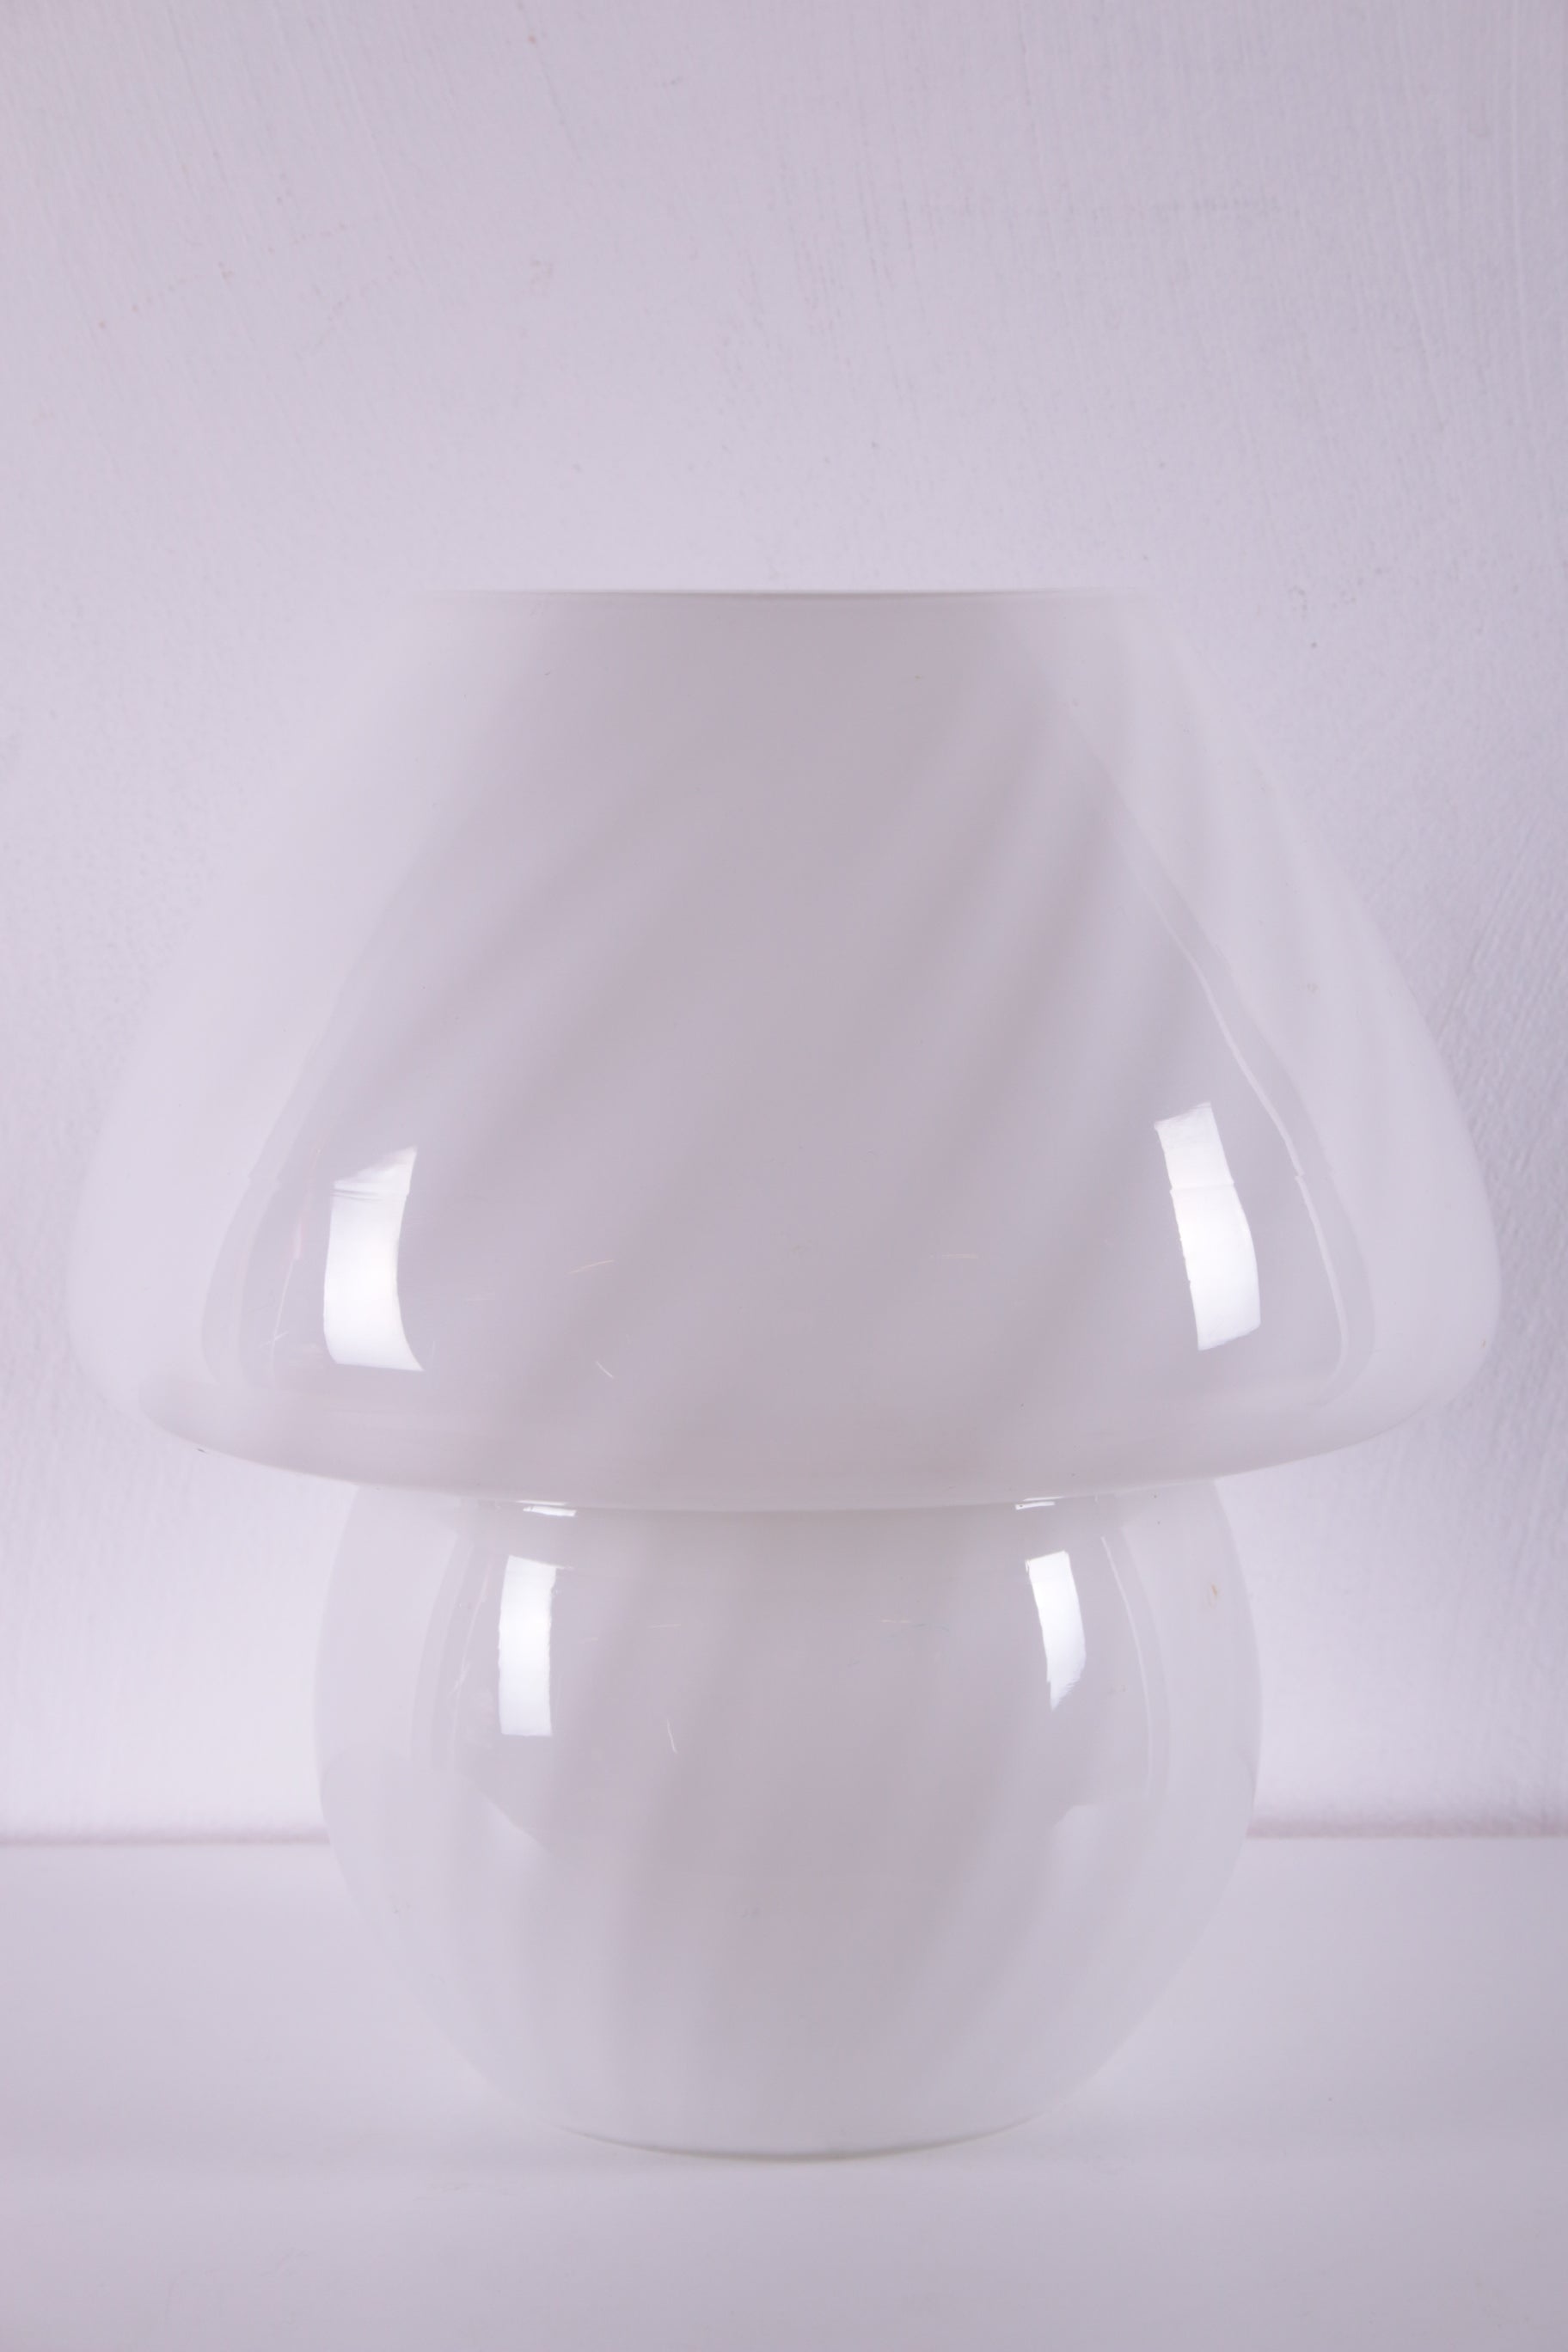 Champignonlamp mooi wit glas van het Model 6282 voorkant licht uit